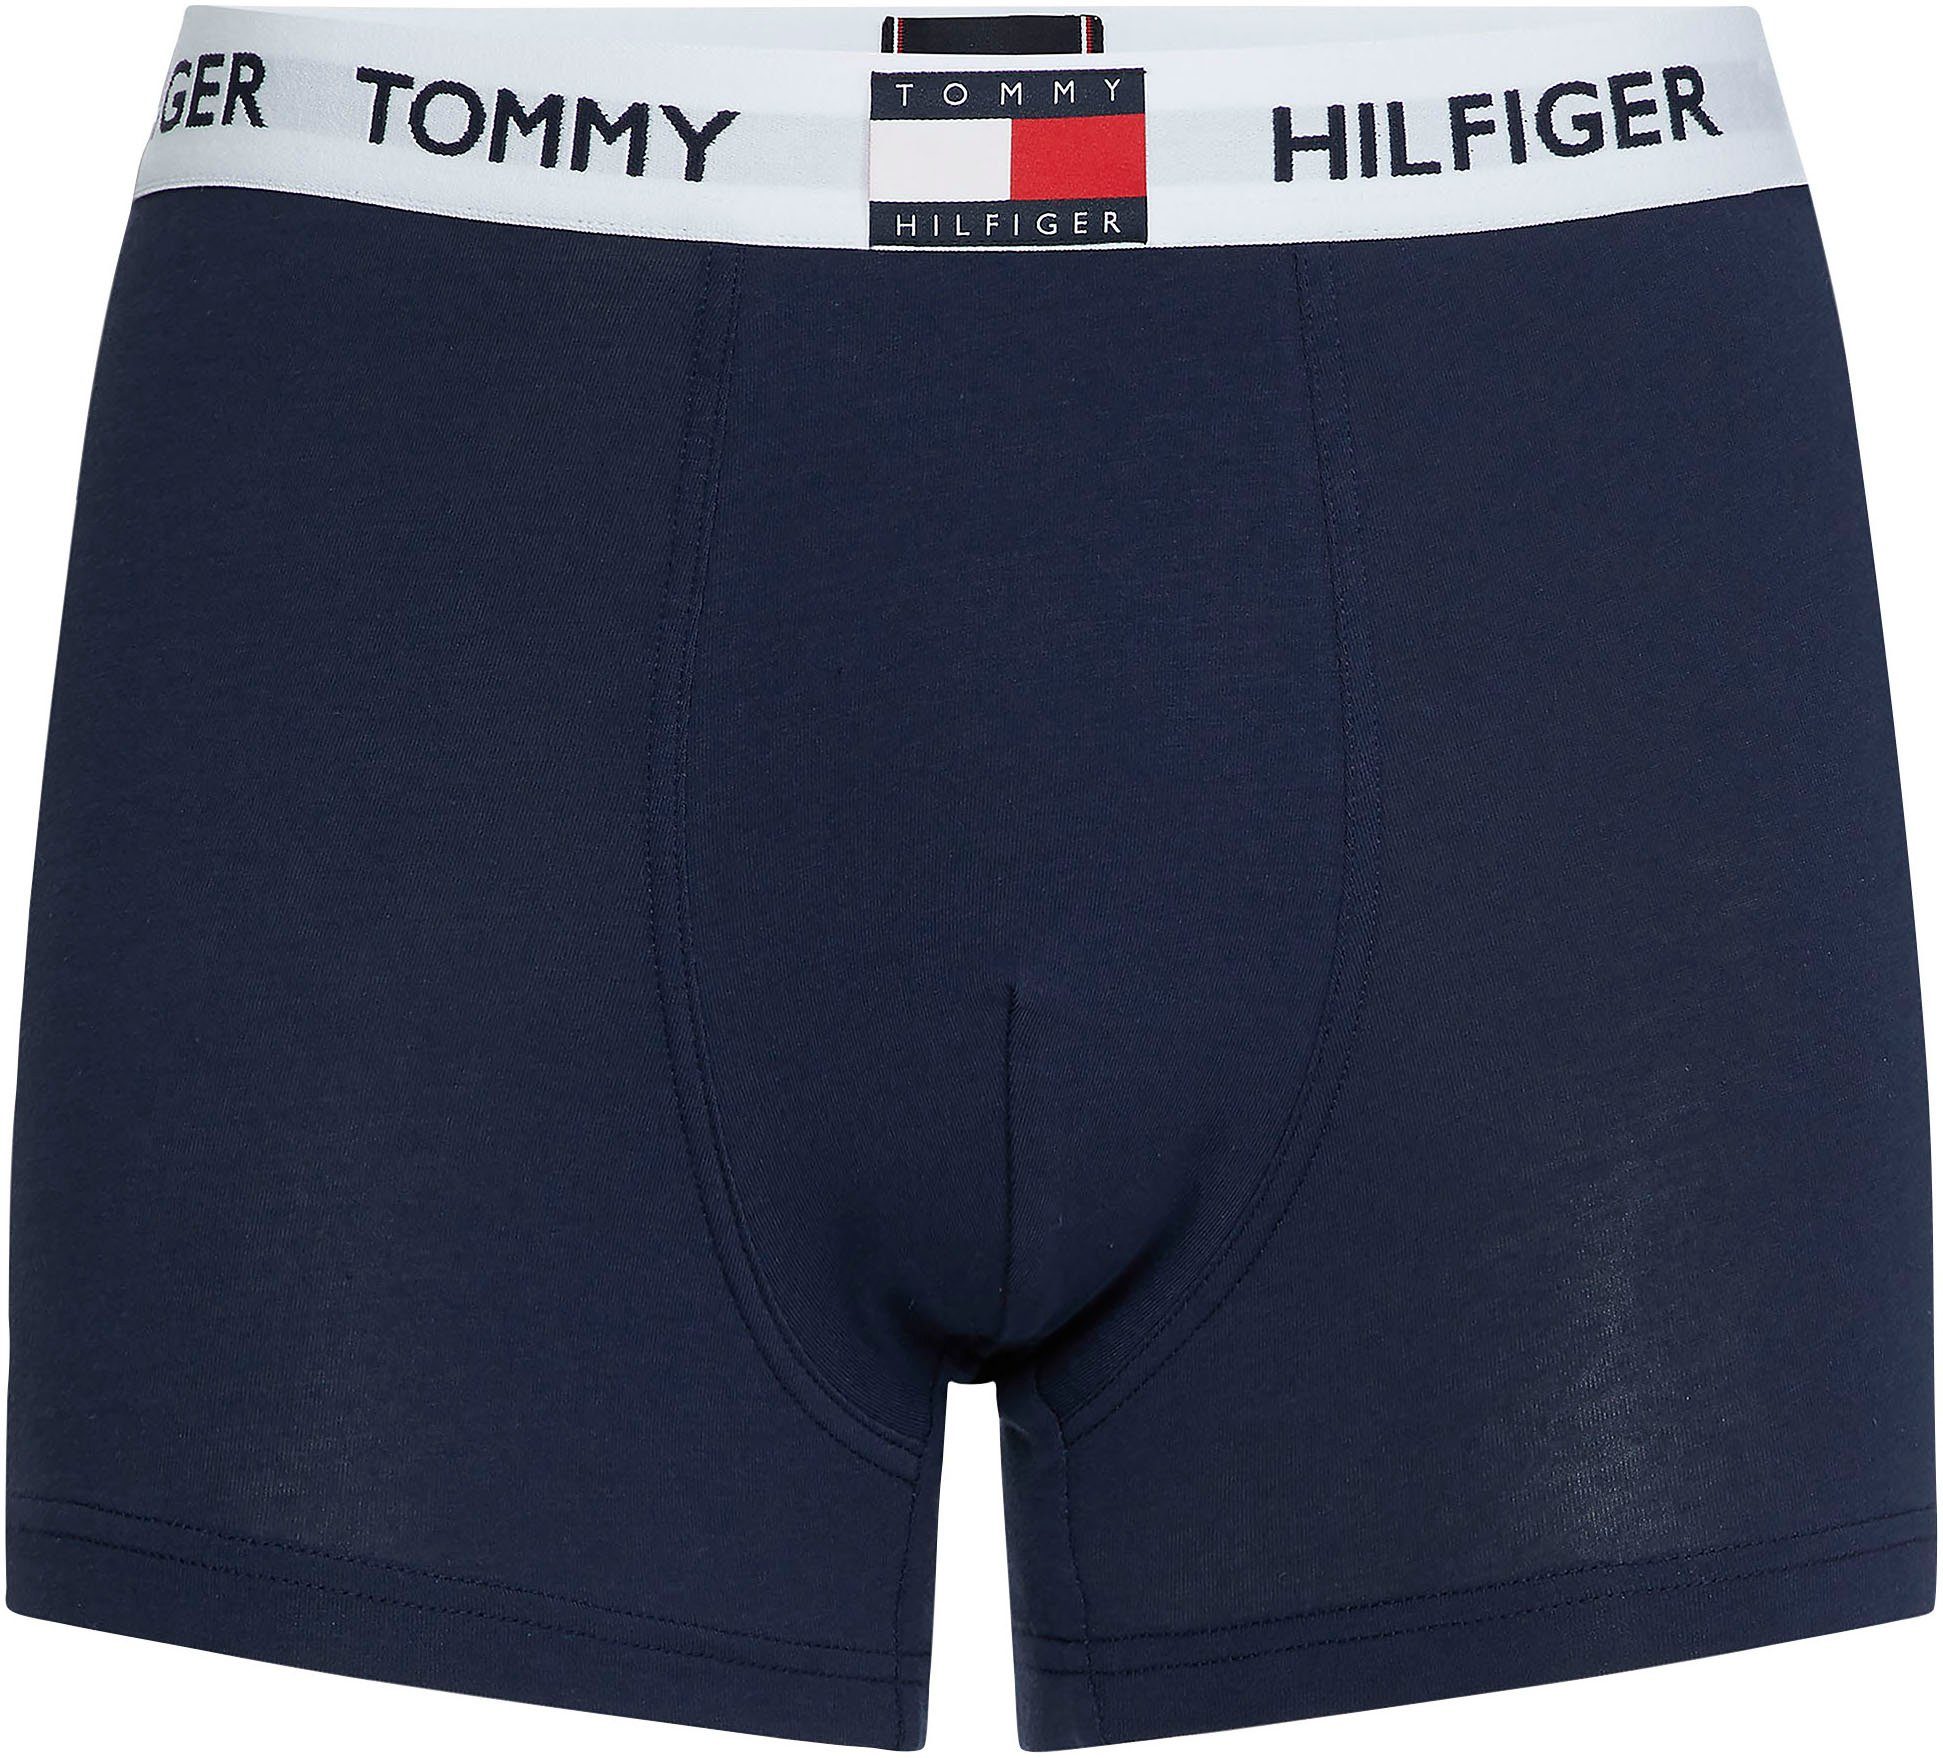 Underwear Logo-Elastiktape Tommy NAVY Tommy Hilfiger Trunk Hilfiger BLAZER mit TRUNK